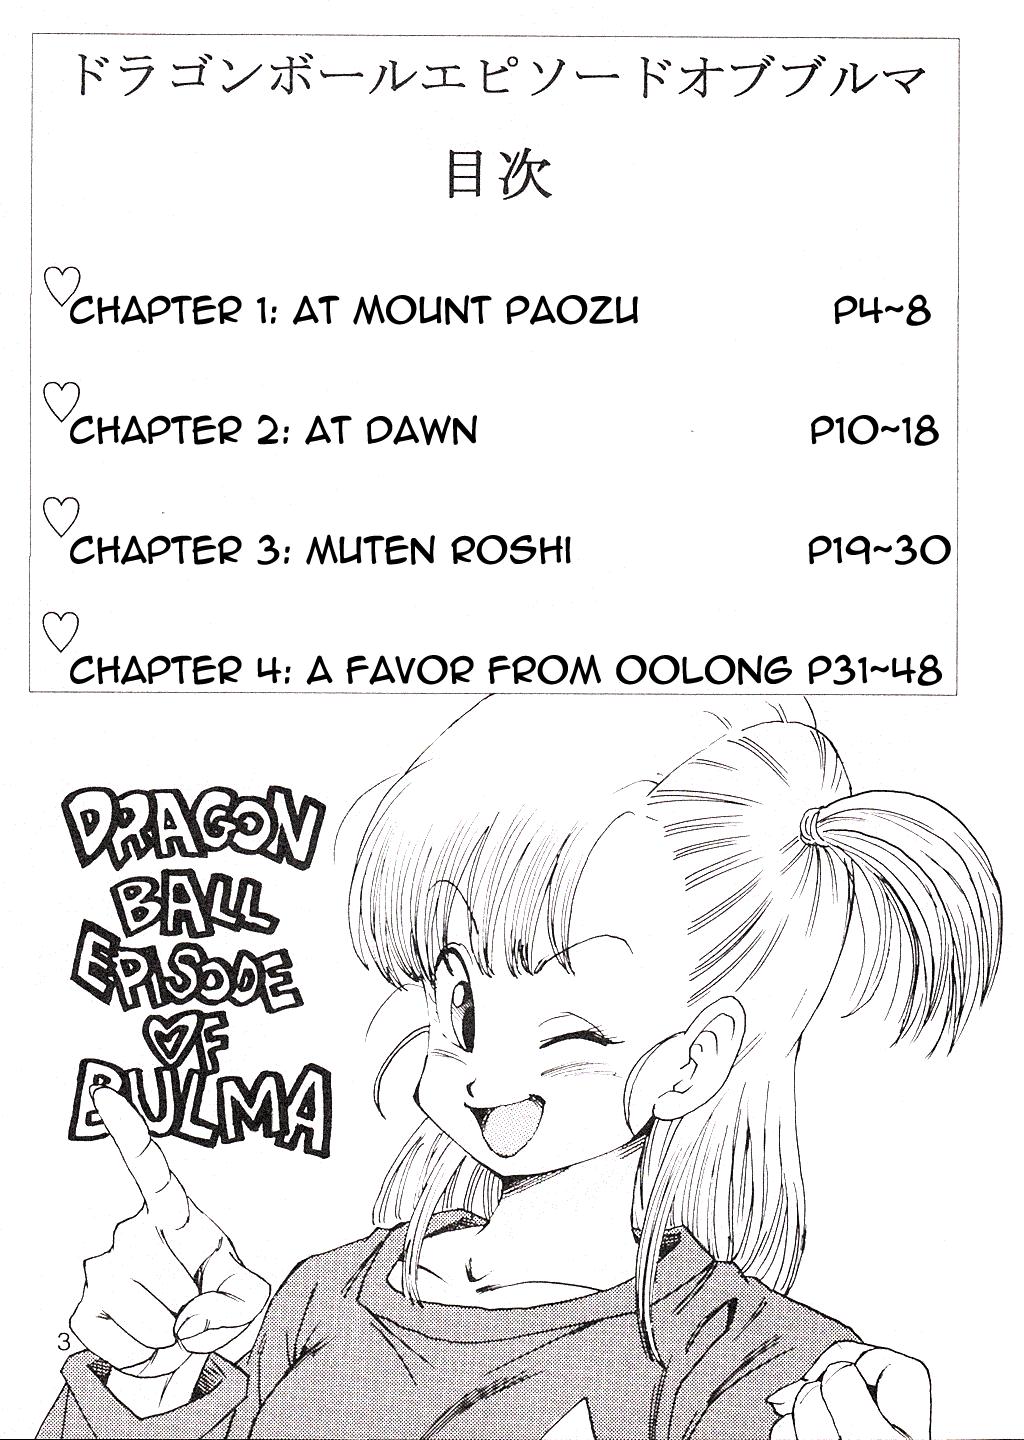 Best Blow Job Dragon Ball EB Episode of Bulma - Dragon ball Blows - Page 4